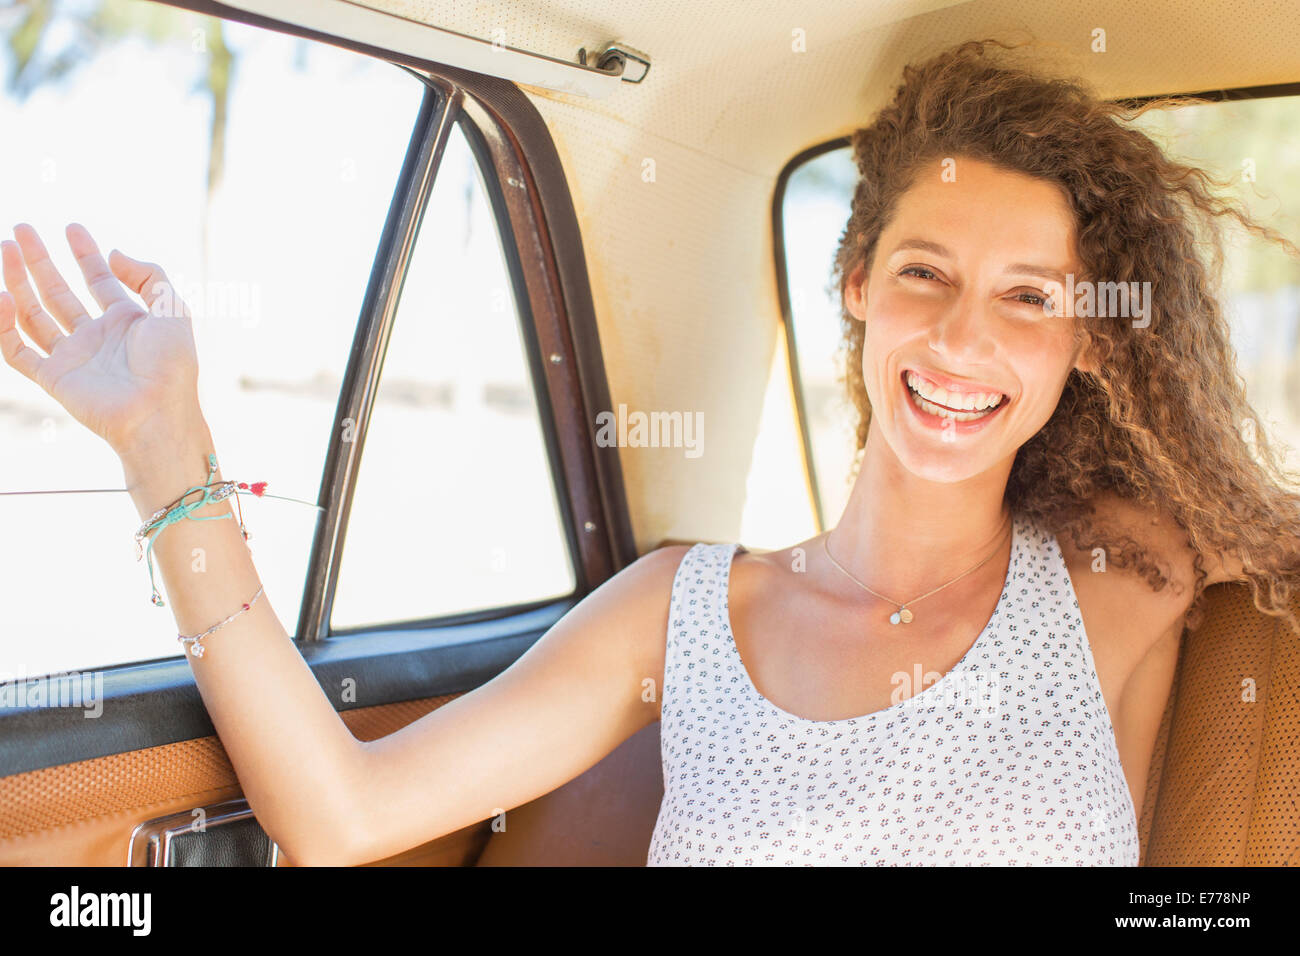 Woman feeling breeze from backseat car window Stock Photo